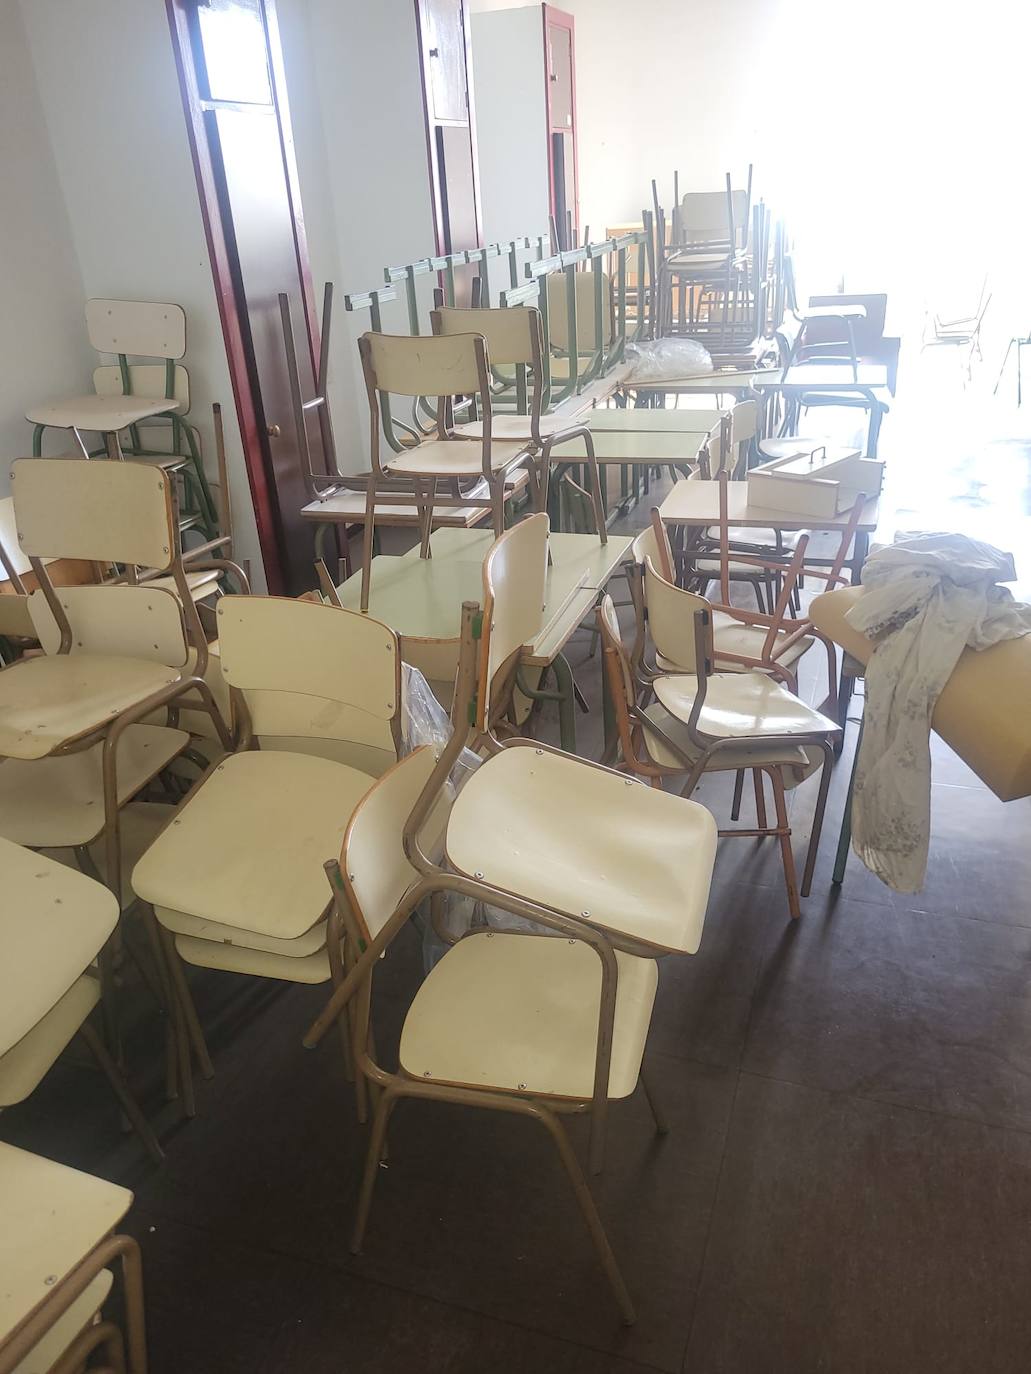 Corazones Unidos reclama a la ULE la cesión del mobiliario y enseres de la Escuela Hogar de Ponferrada